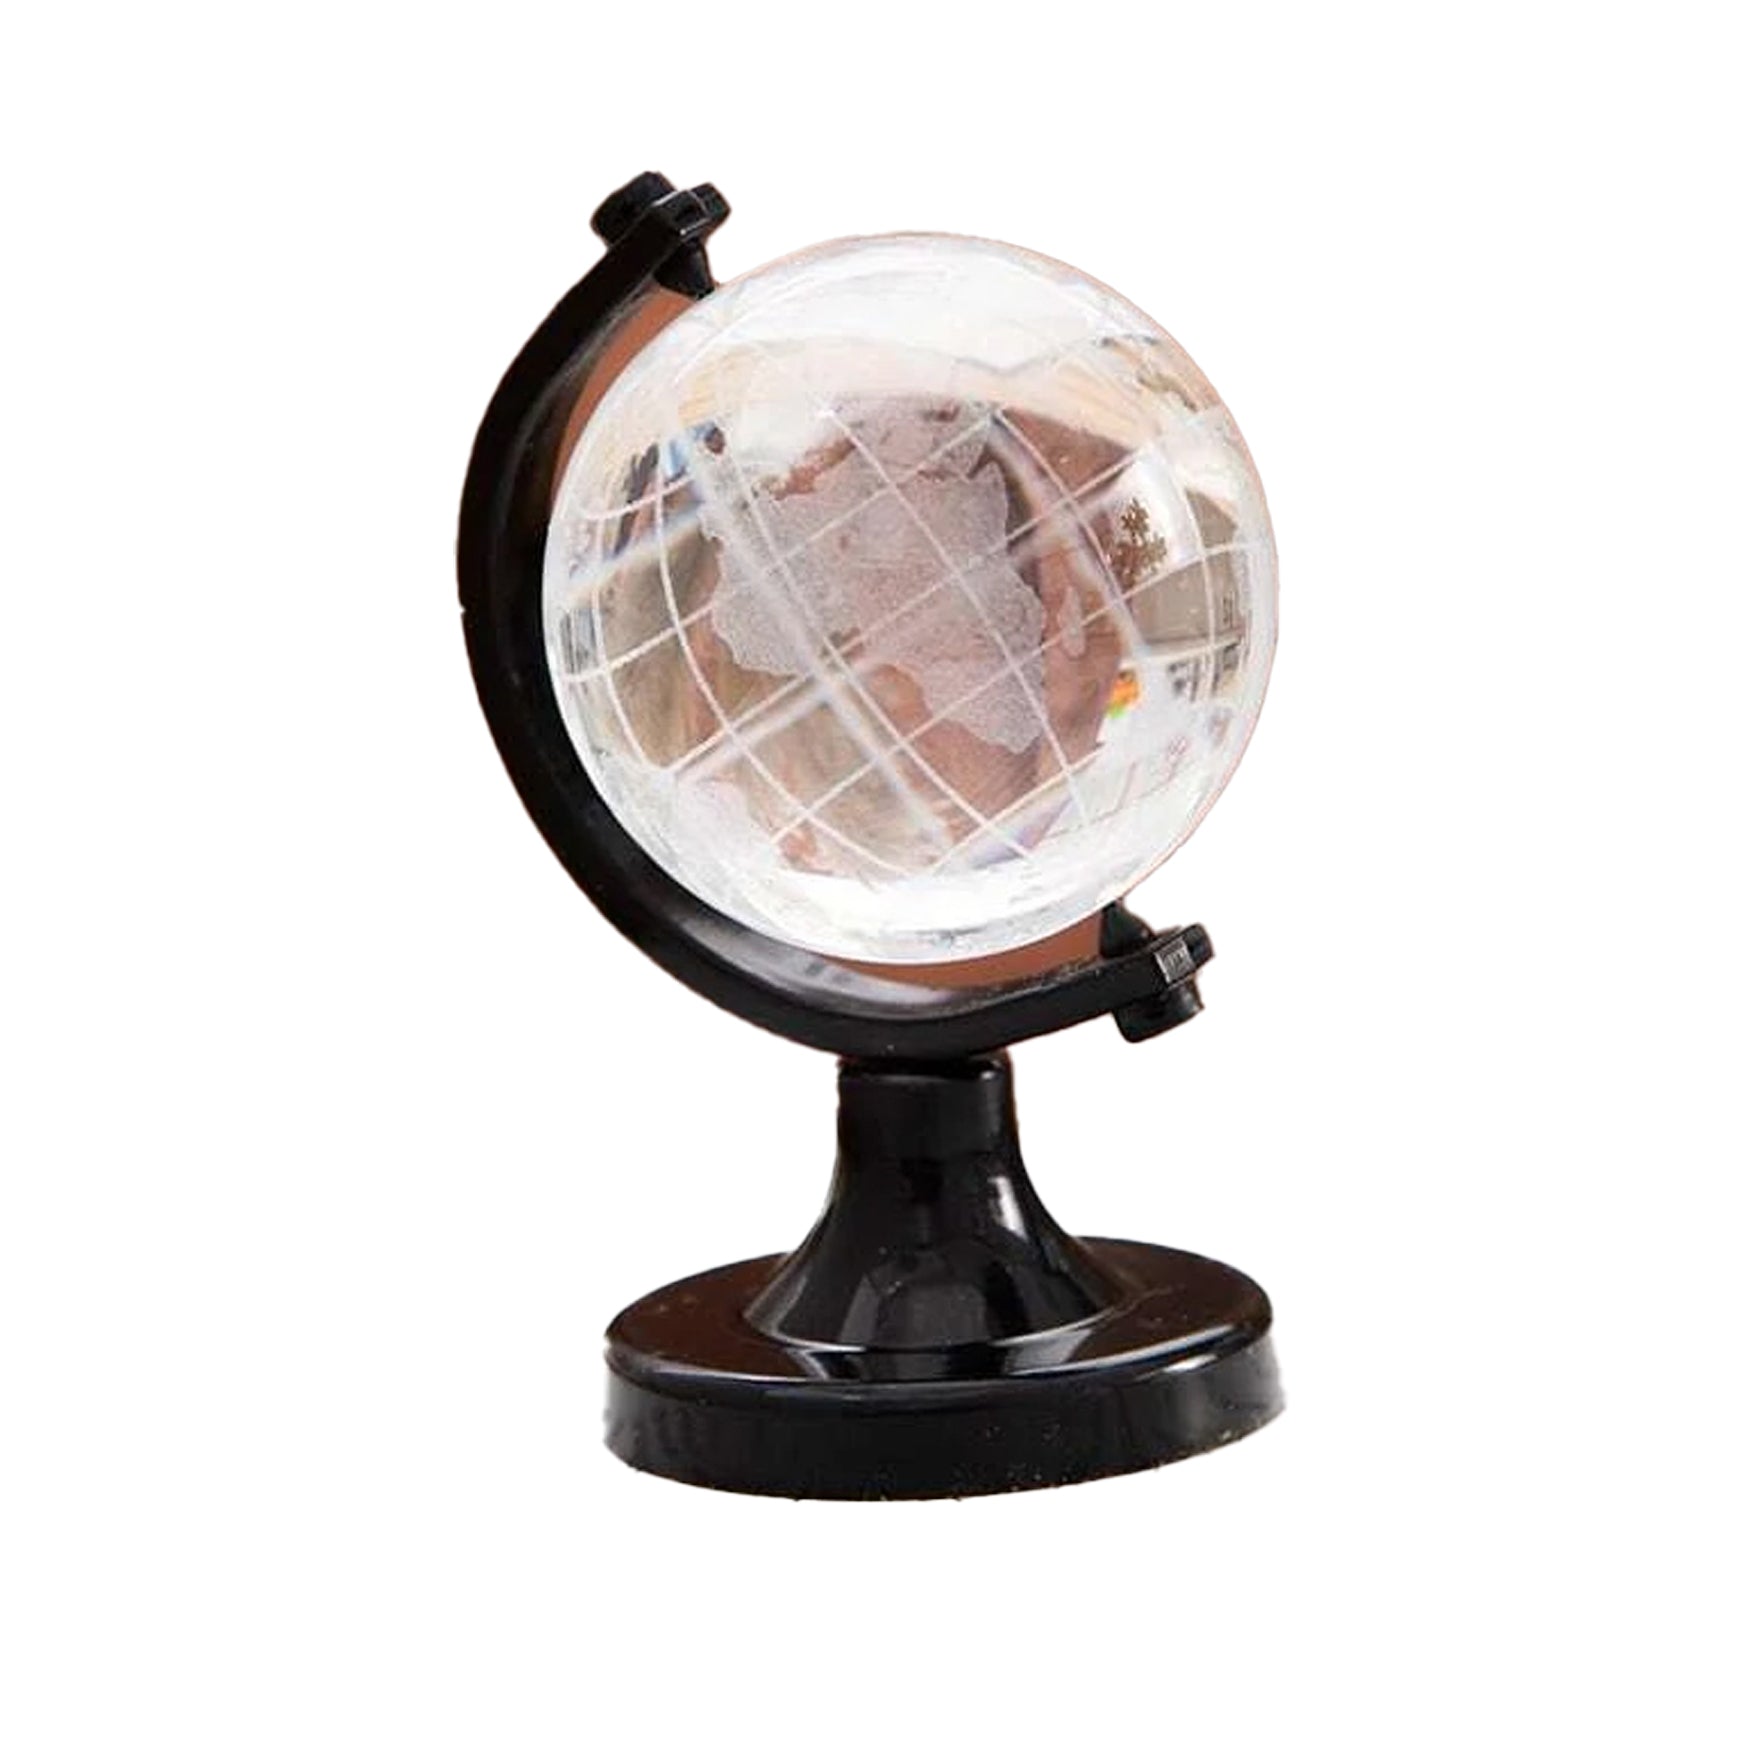 الكرة الكريستالية، الكرة الزجاجية، الكرة الأرضية، الكرة الأرضية المستديرة خريطة العالم الكرة ديكور المنزل مكتب هدية غلوب الورق